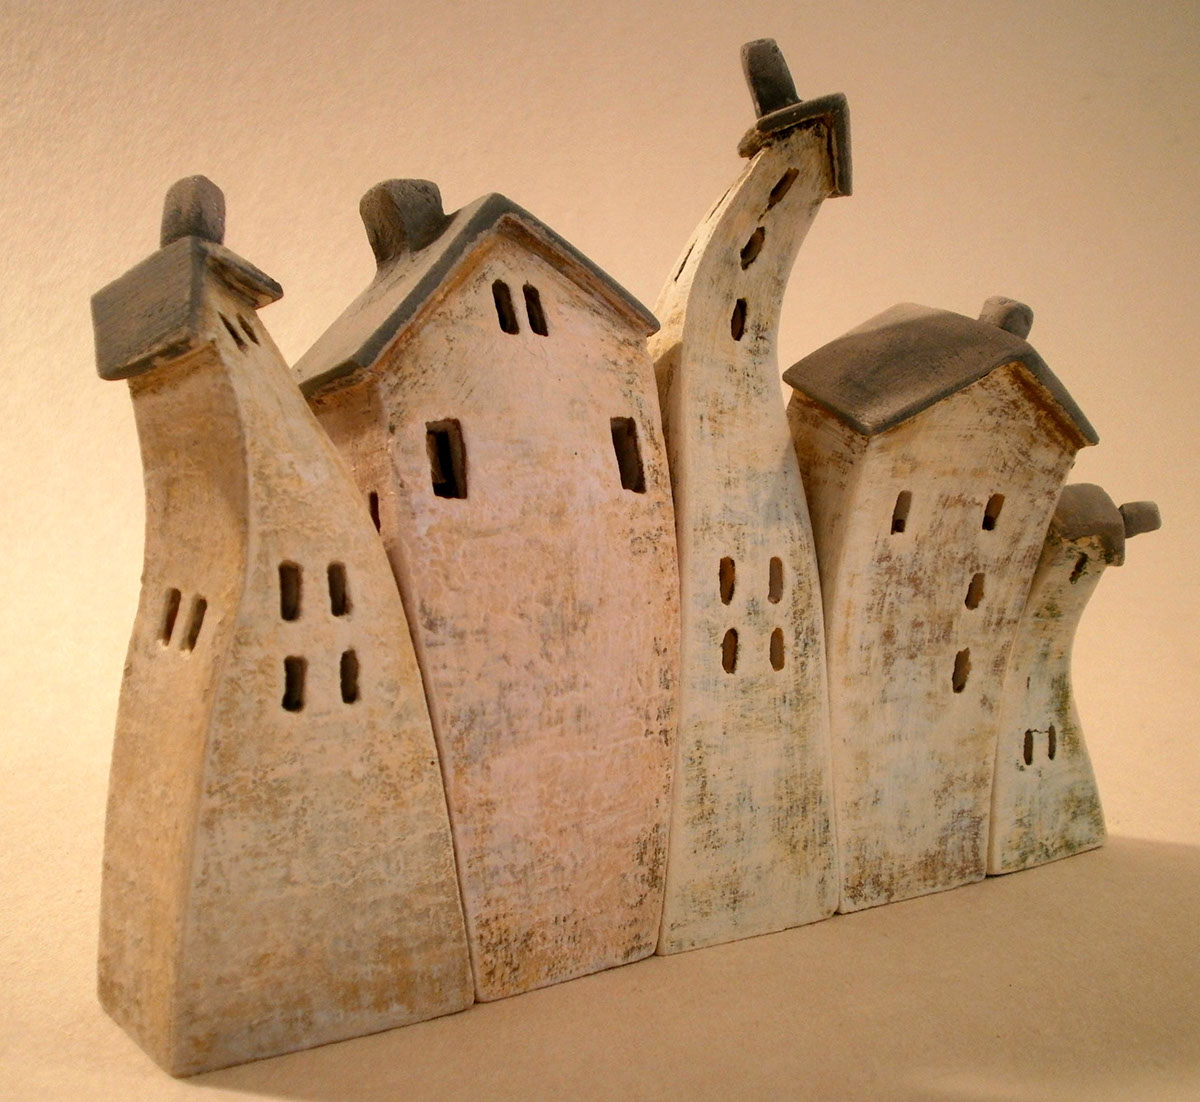 miniature ceramic houses